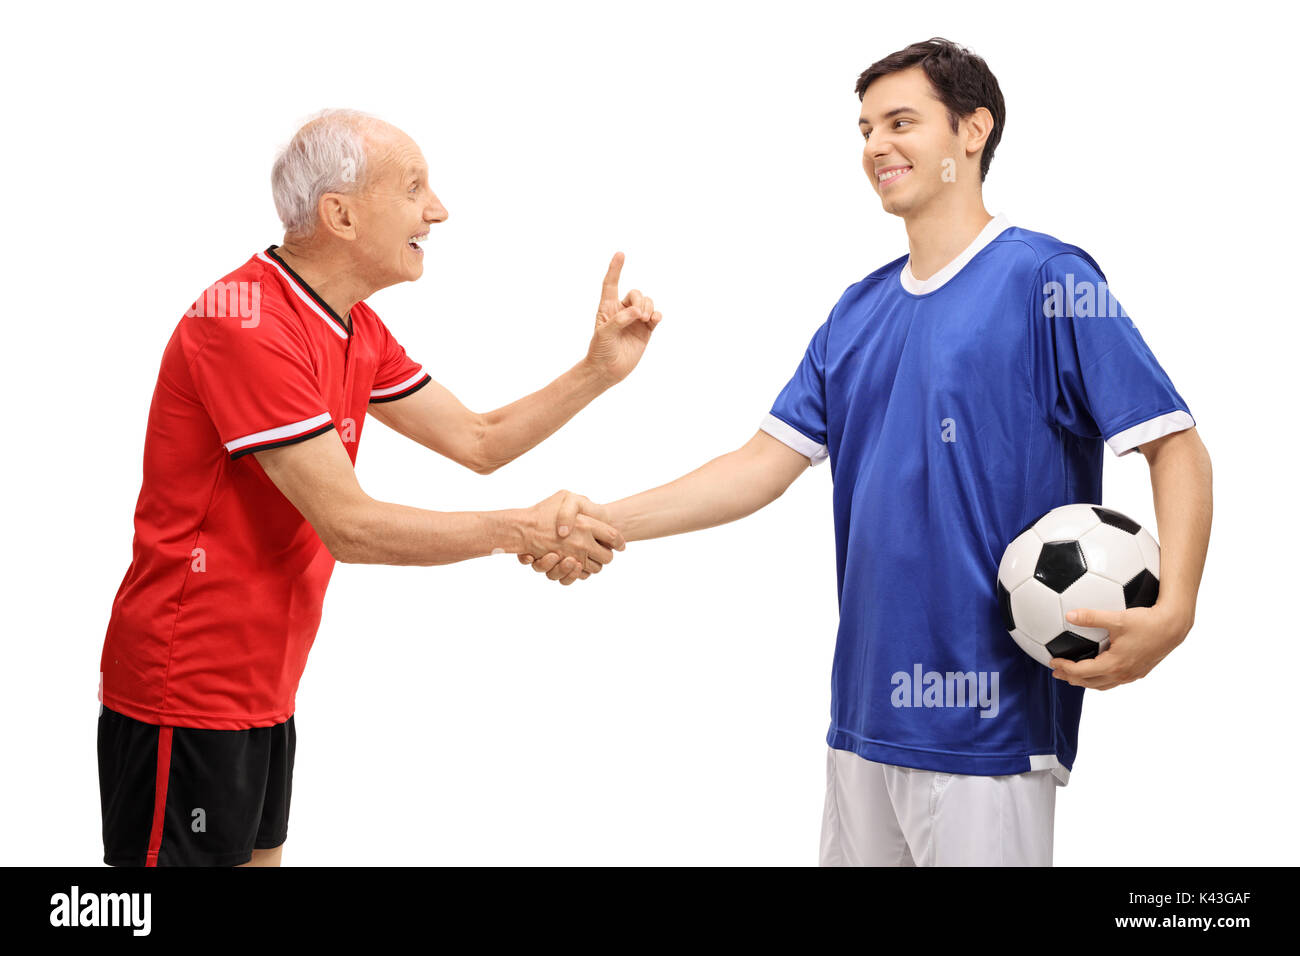 Alte Fußball-Spieler die Hände schütteln mit einem jungen Spieler und ihm raten auf weißem Hintergrund Stockfoto